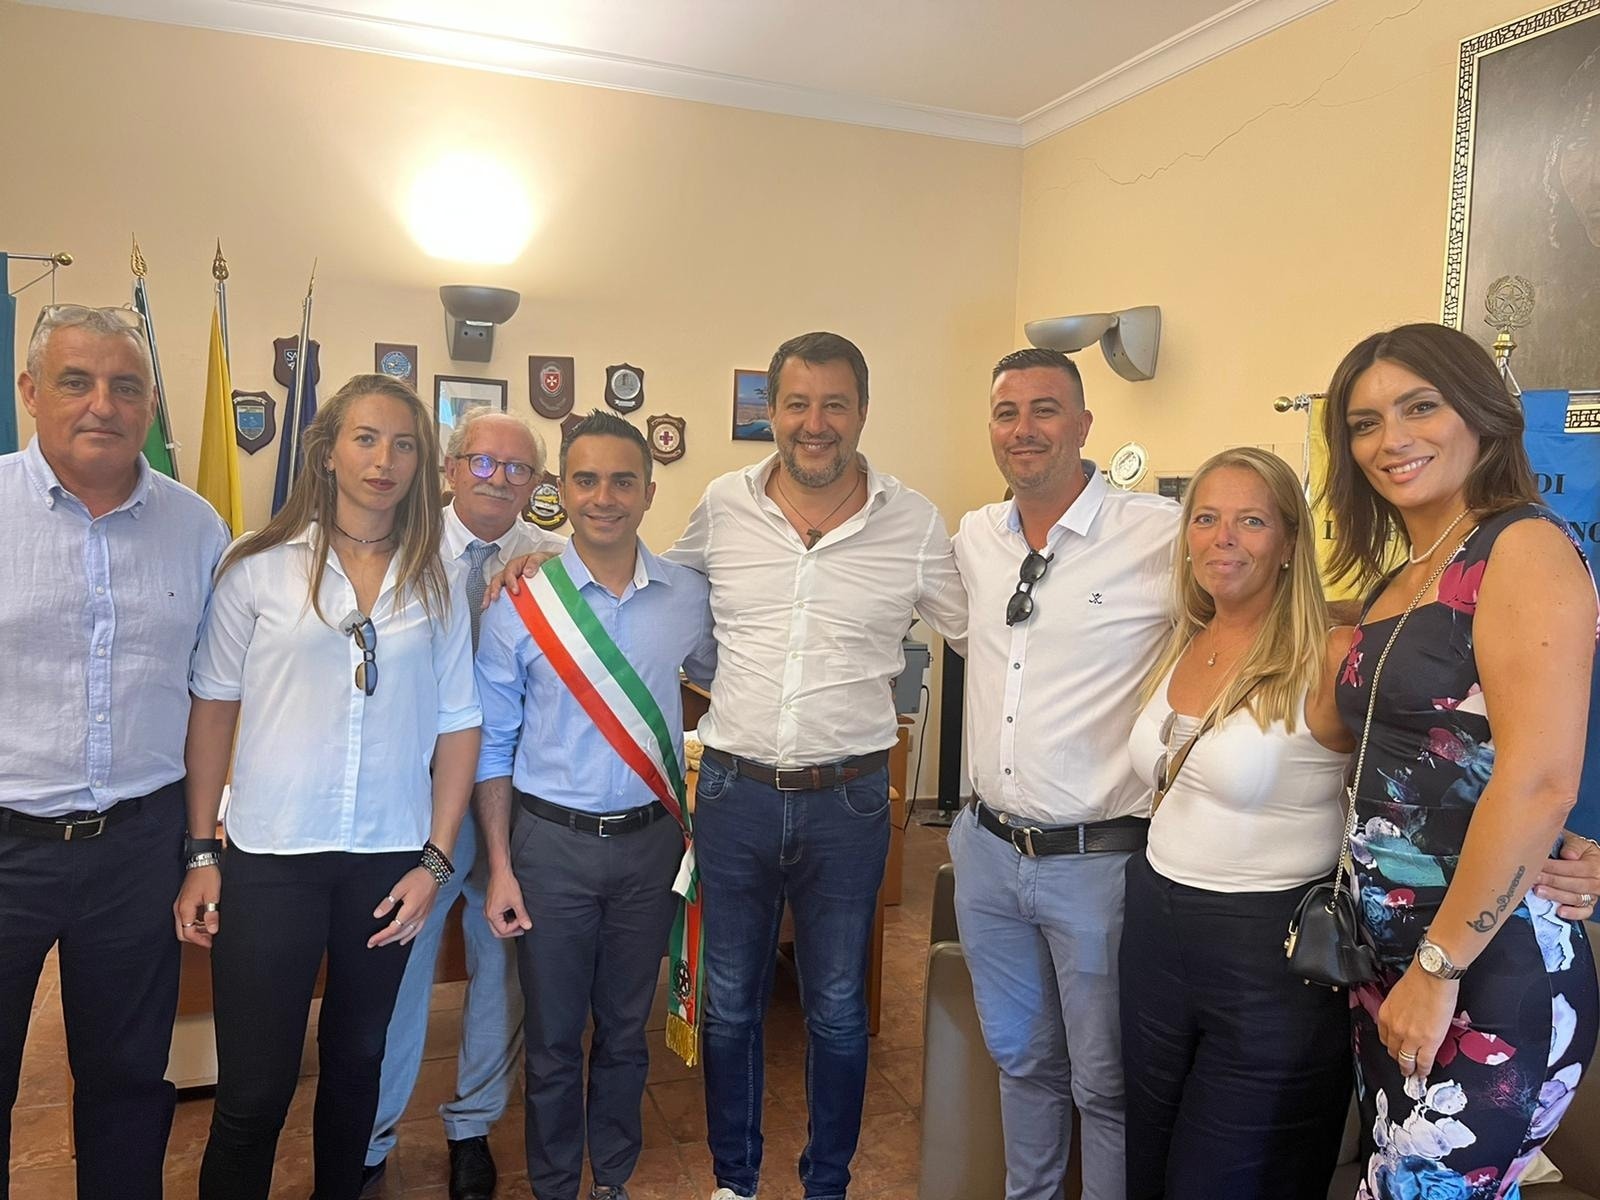 Il leader di estrema destra Matteo Salvini difende la sua politica anti-immigrazione sull’isola di Lampedusa